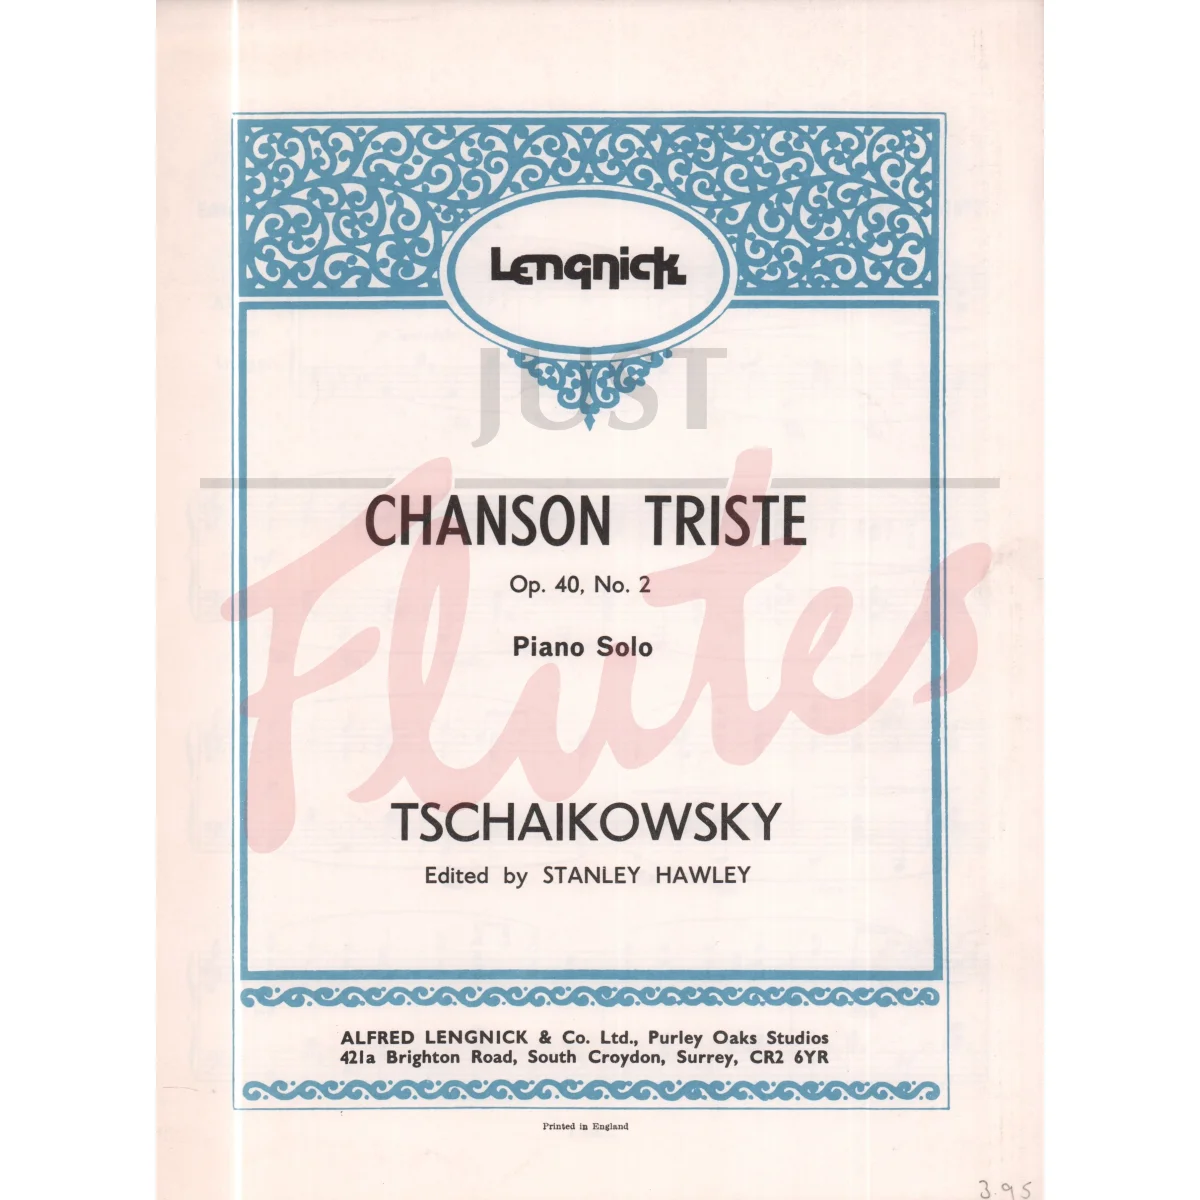 Two Tchaikovsky Pieces